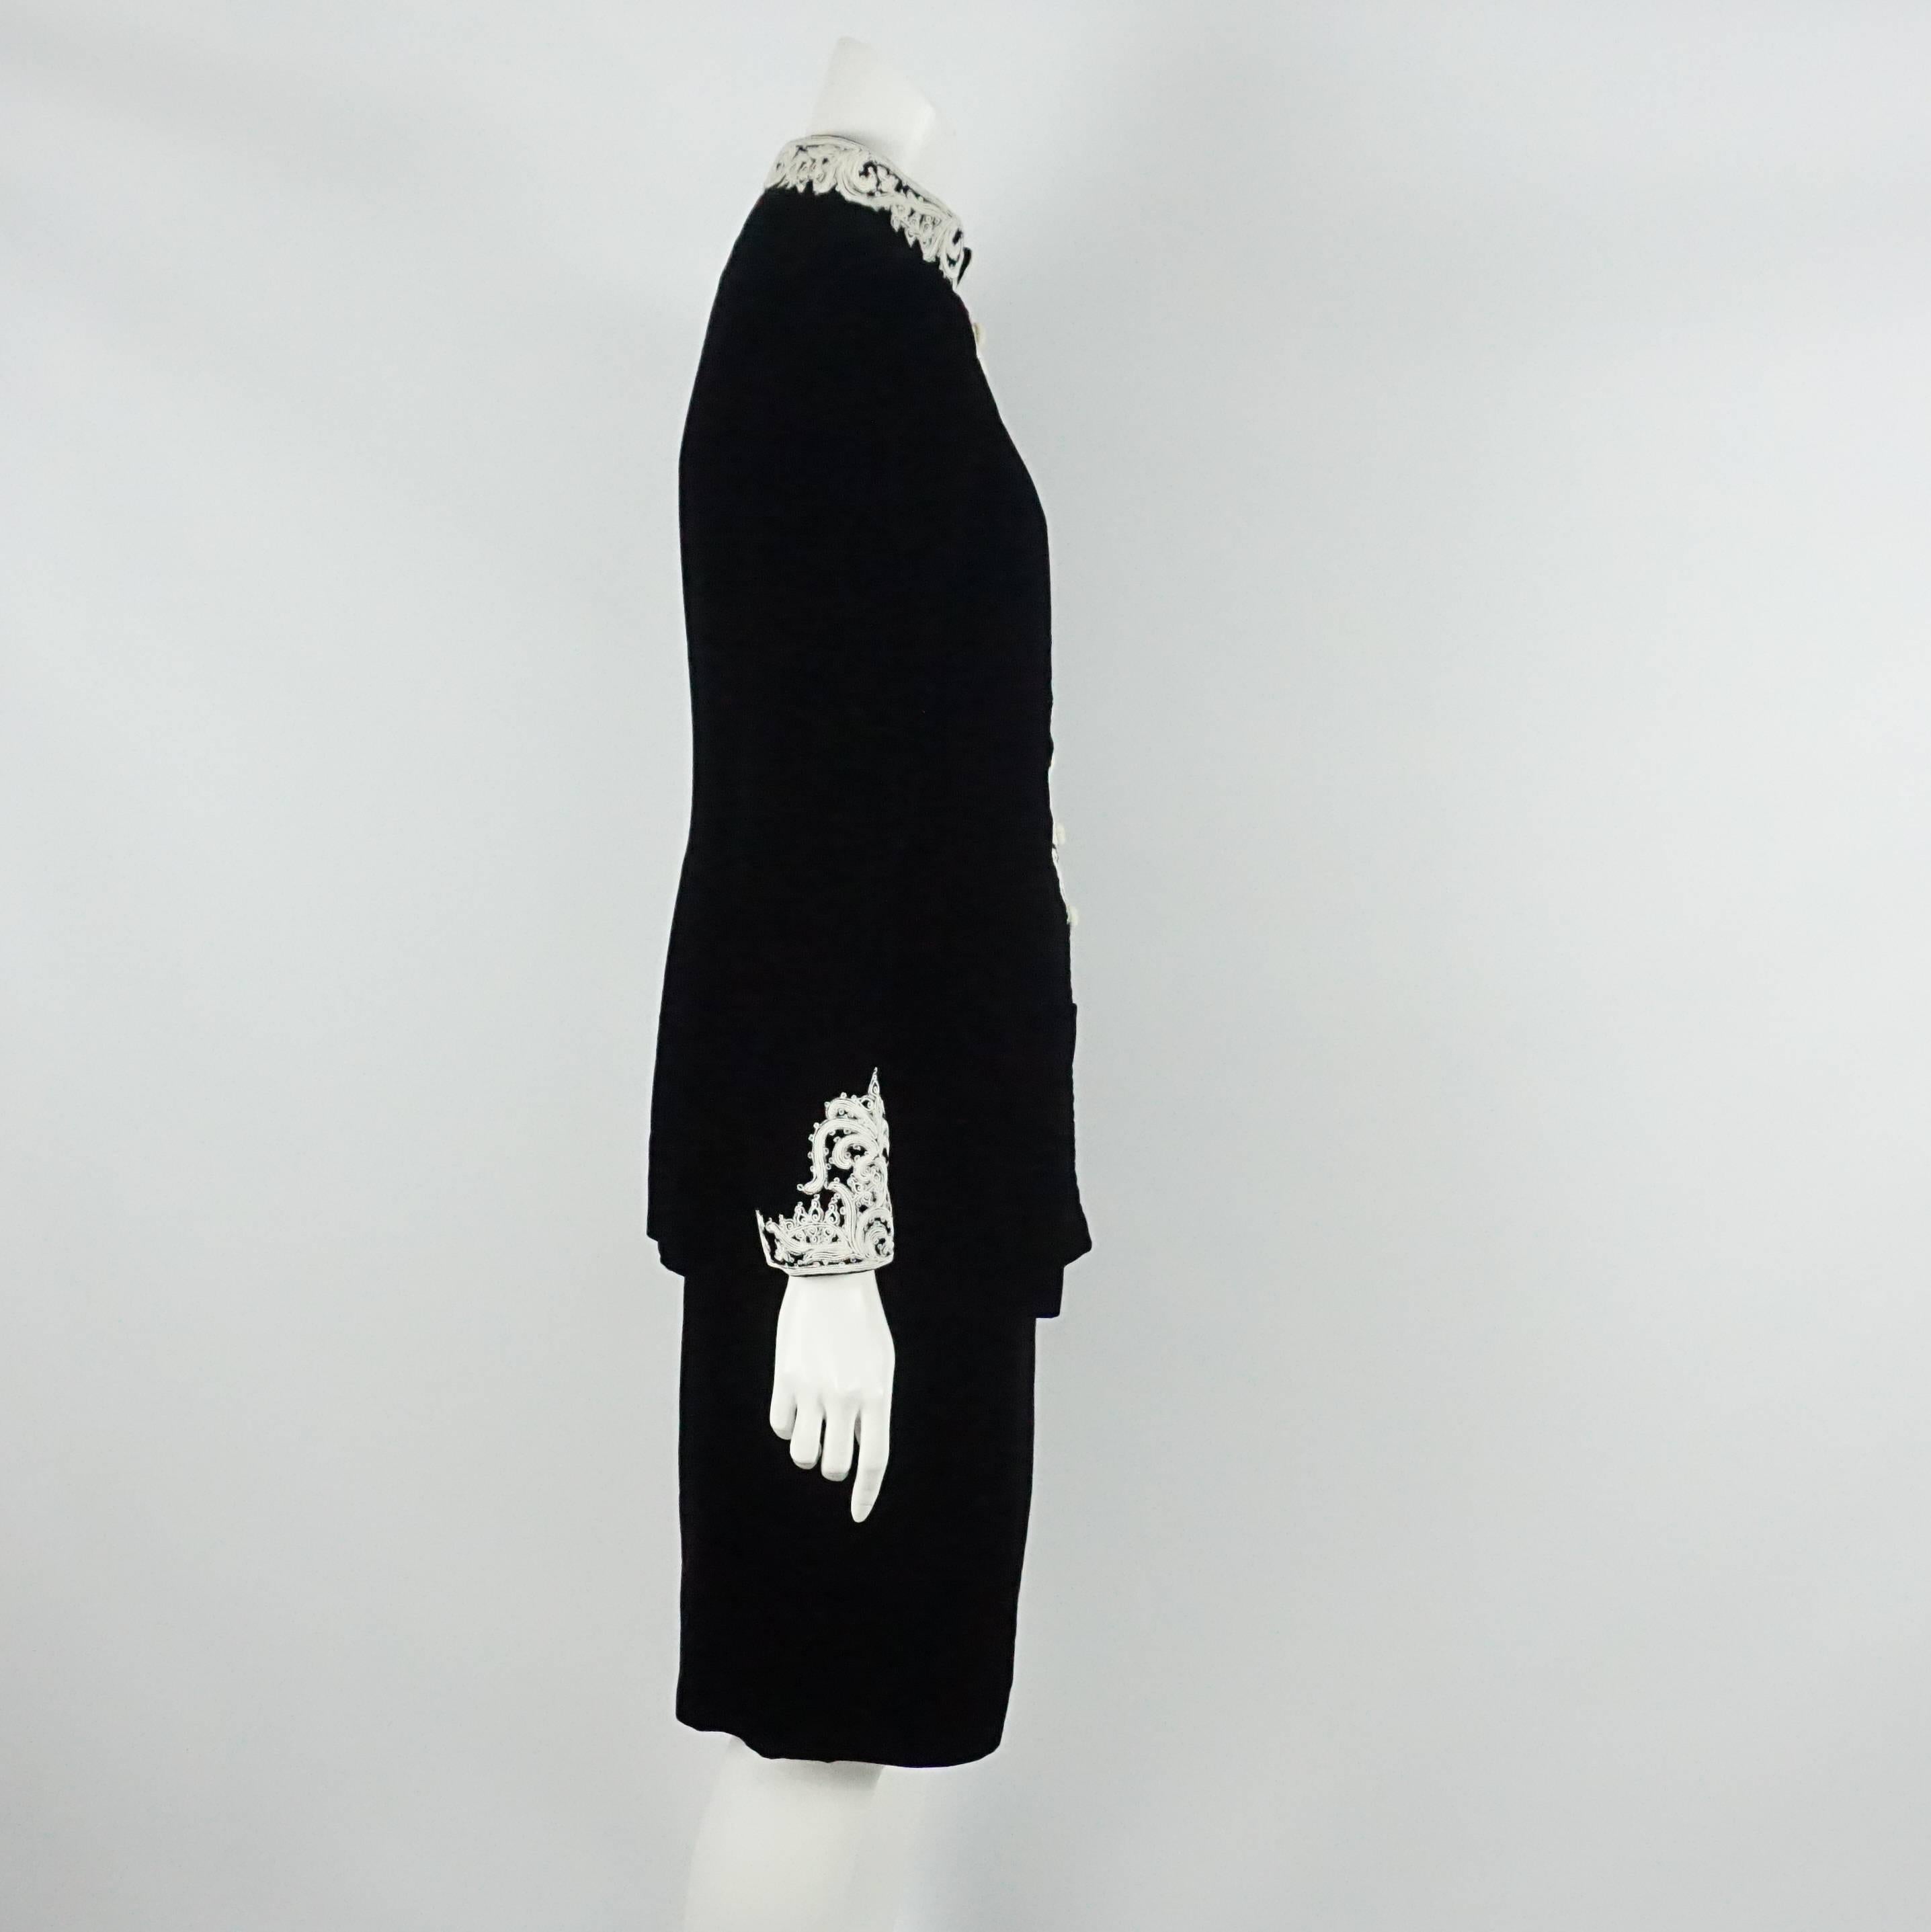 Oscar de la Renta Schwarzer Samtrock Anzug mit weißer Stickerei - 10 - 1990s. Dieser Rock ist in einem ausgezeichneten Vintage-Zustand mit leichten Gebrauchsspuren an Samt und Stickerei. Die Jacke hat einen orientalischen Kragen, eine bestickte